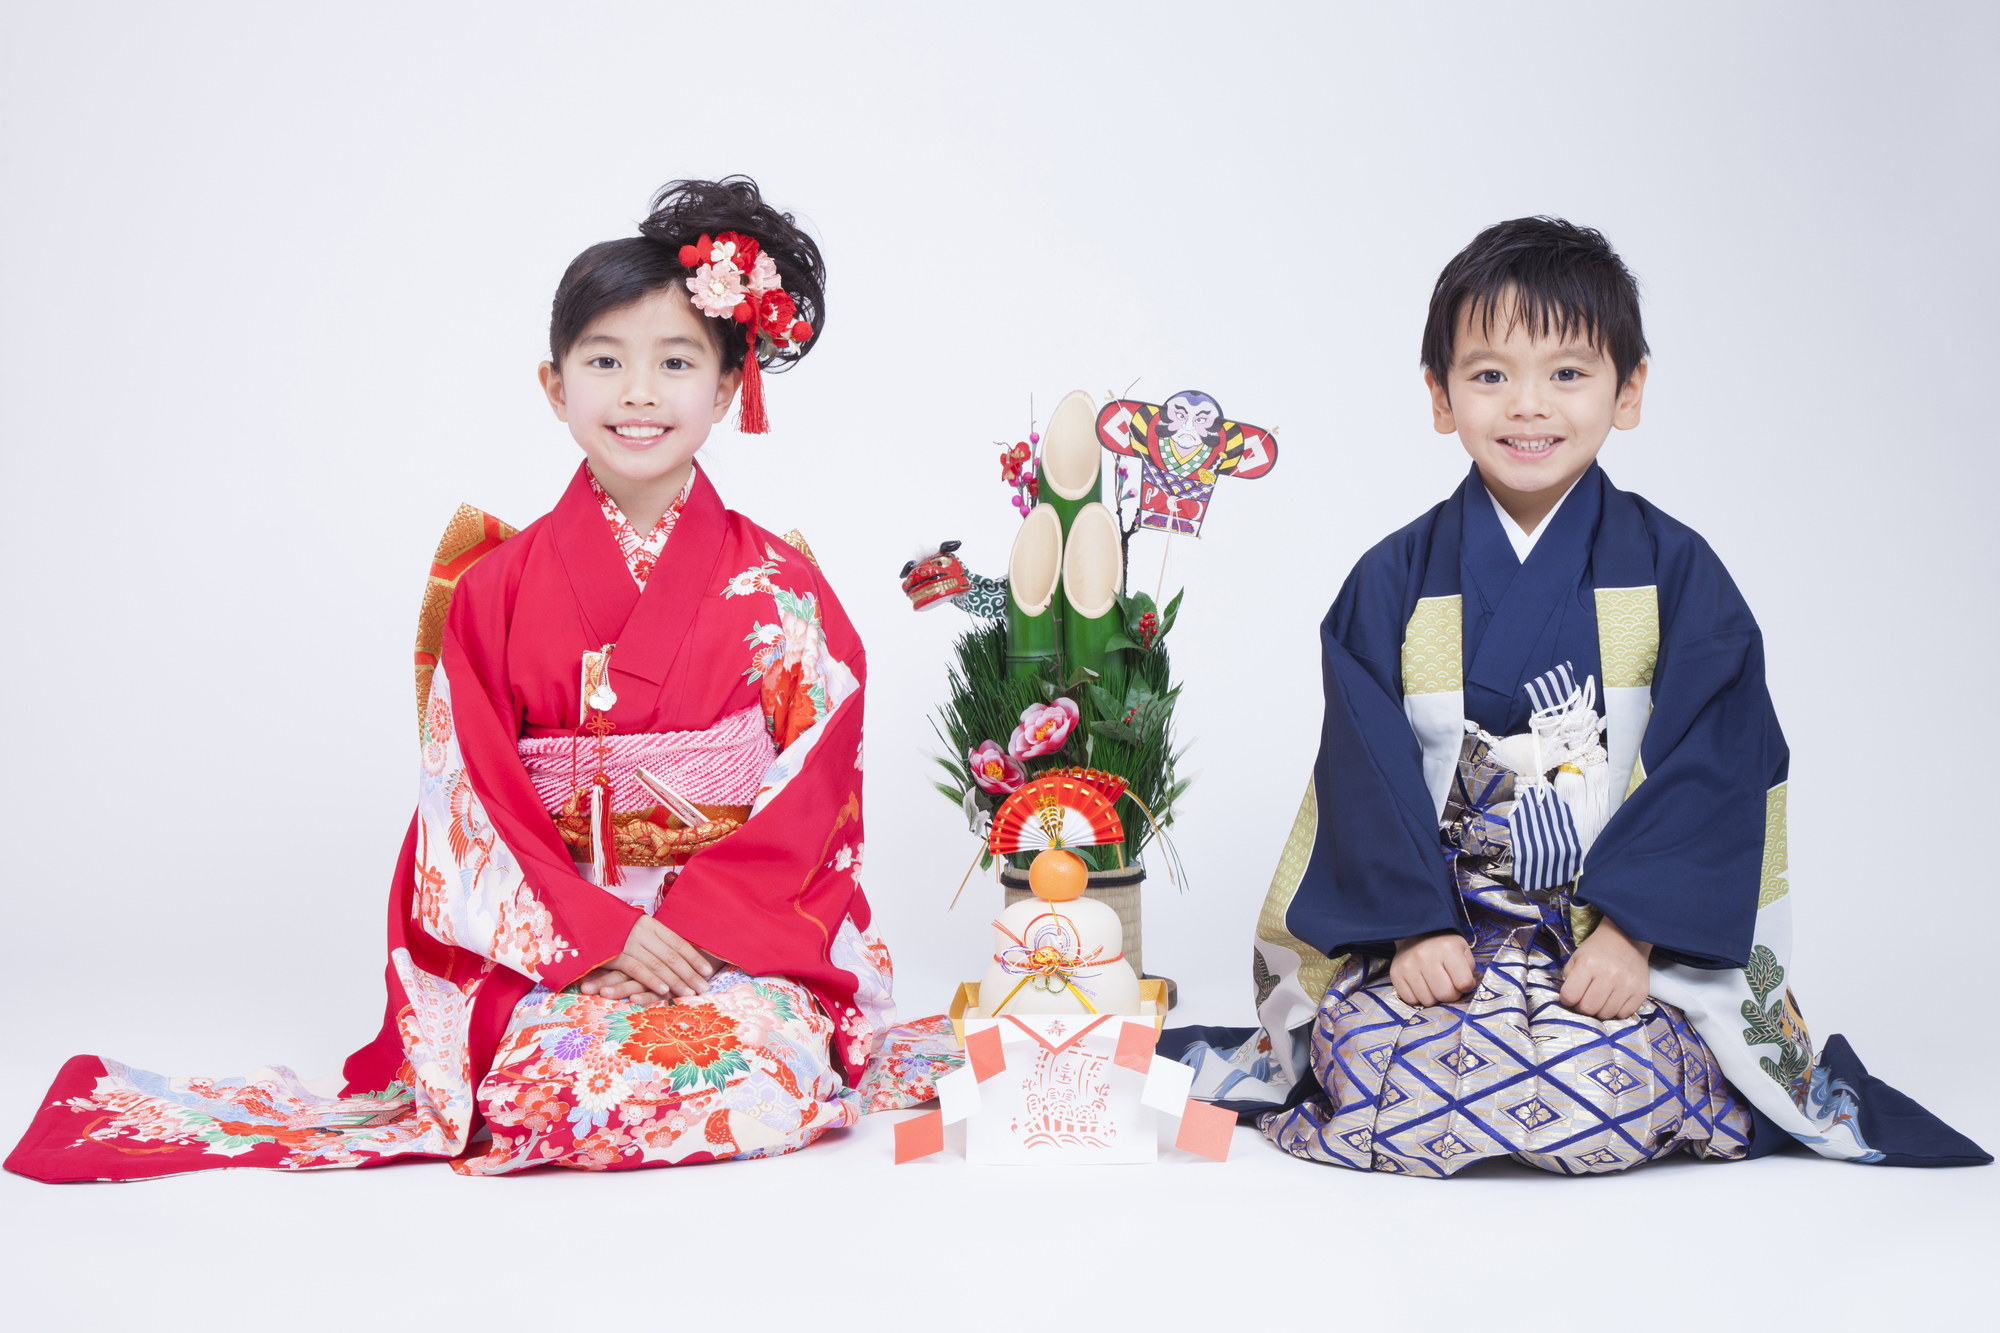 Năm mới ở Nhật Bản giữ một vị trí đặc biệt trong trái tim trẻ em, mang đến sự kết hợp hoàn hảo giữa truyền thống, niềm vui và ý nghĩa văn hóa, hình thành nên trải nghiệm của các em và tạo ra những kỷ niệm đẹp trong nhiều năm tới.